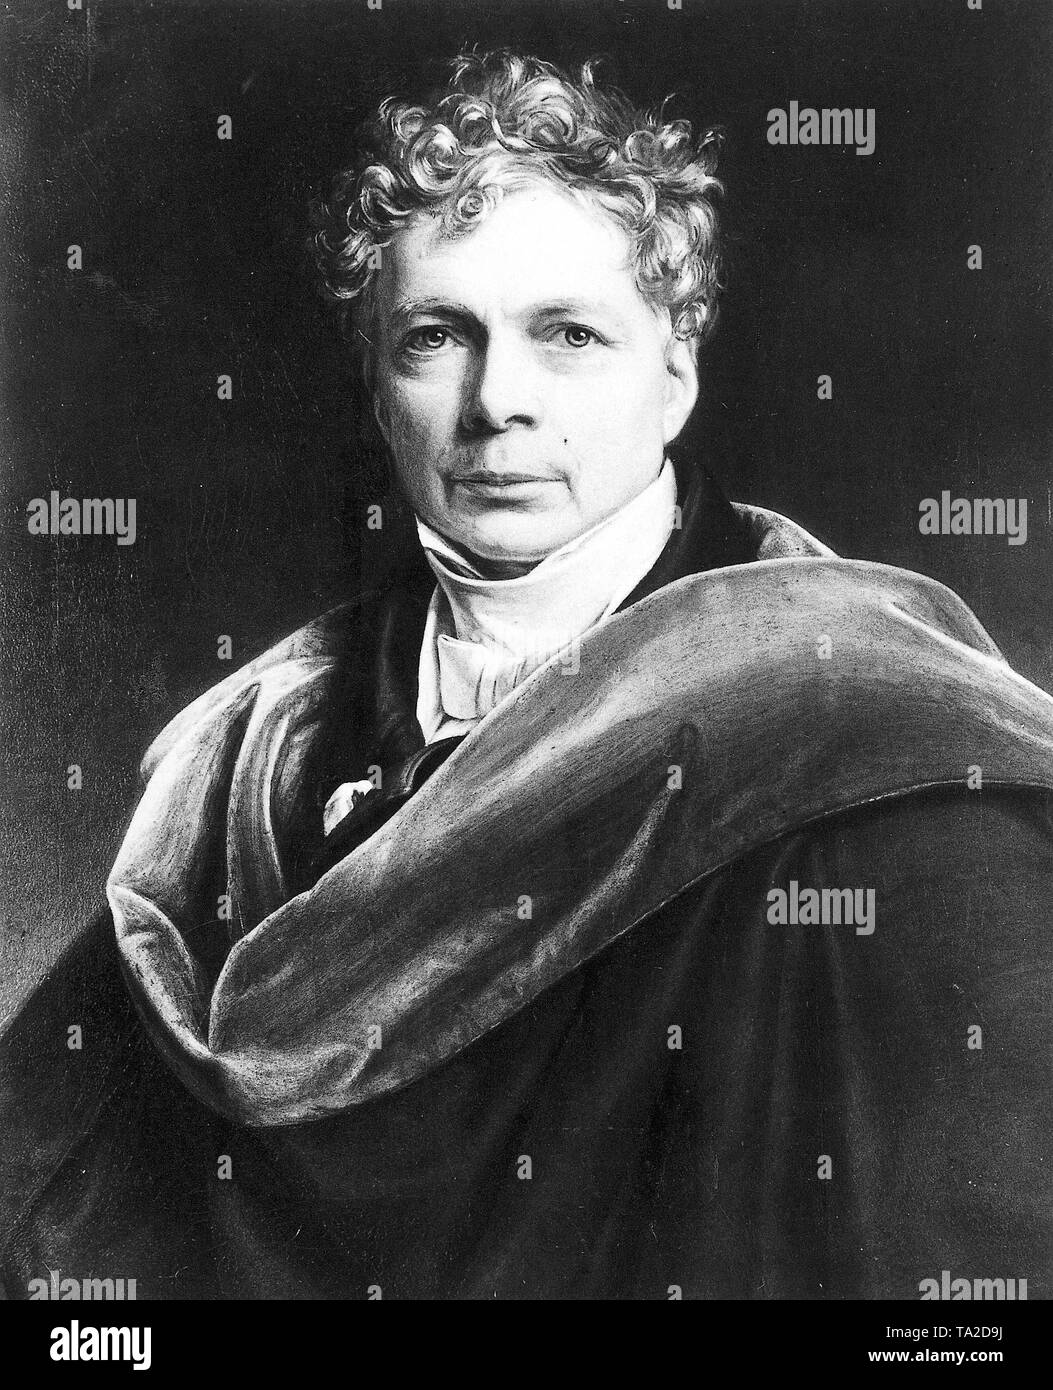 Friedrich Wilhelm Joseph von Schelling (1775-1854), a German philosopher, after a painting by Joseph Karl Stieler. Stock Photo